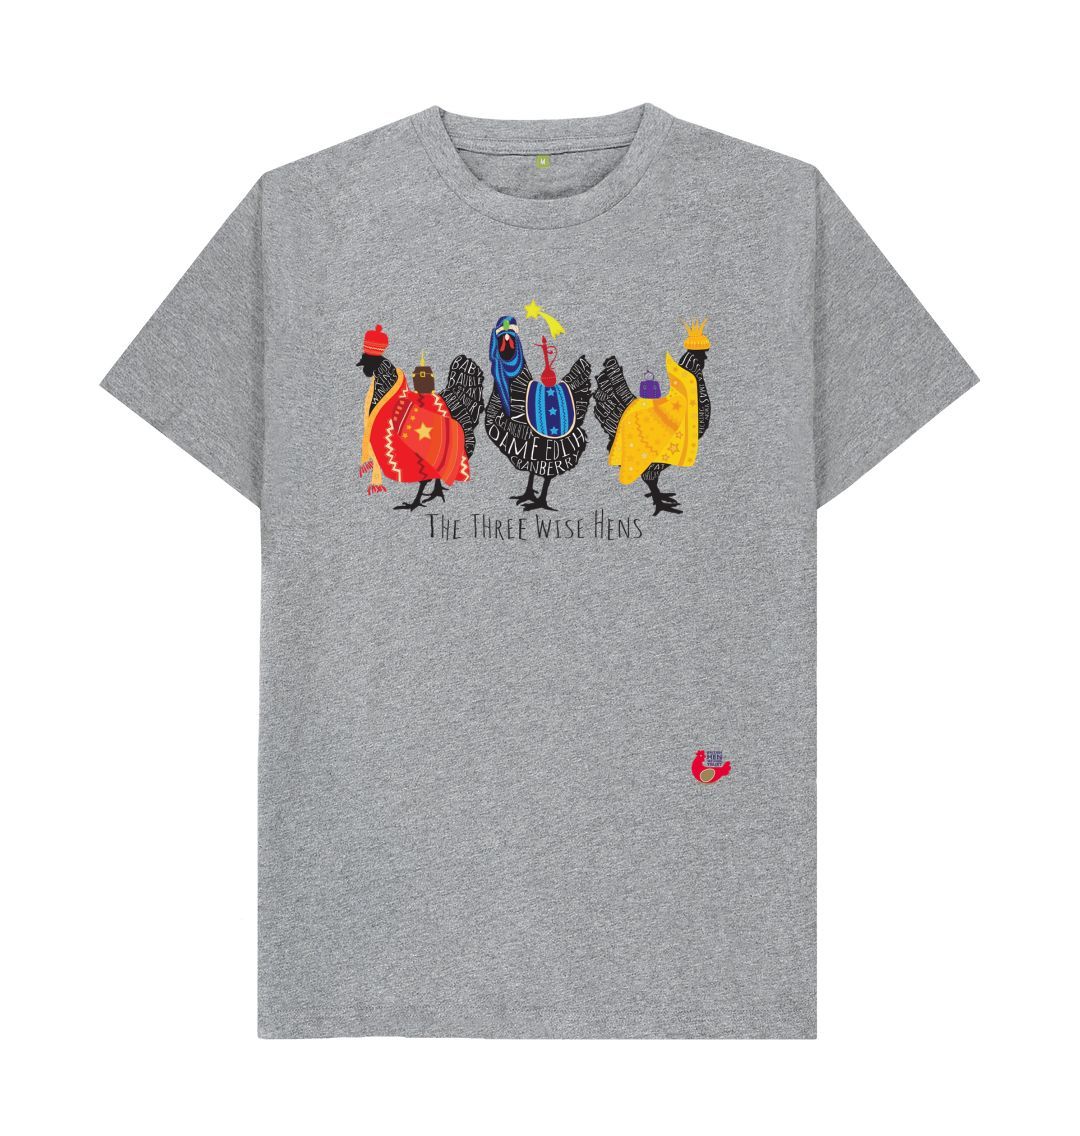 Athletic Grey Size Large Unisex Short Sleeve T-Shirt - Bob Mortimer Three Wise Hens